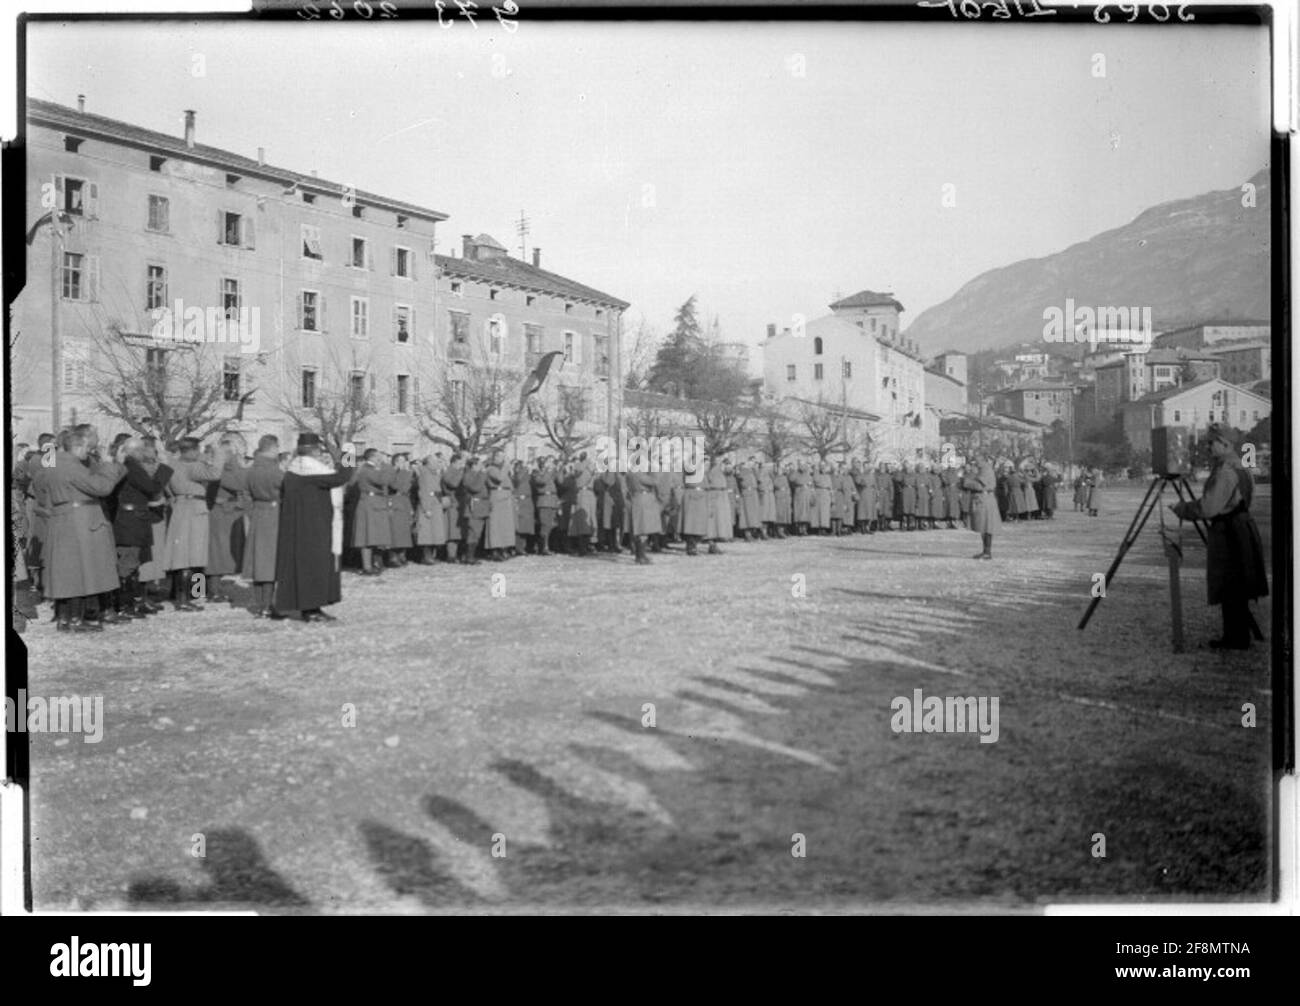 Vereidigung von Soldaten in Trient Fotograf: Flamm, 16. Korpskomando. Stockfoto